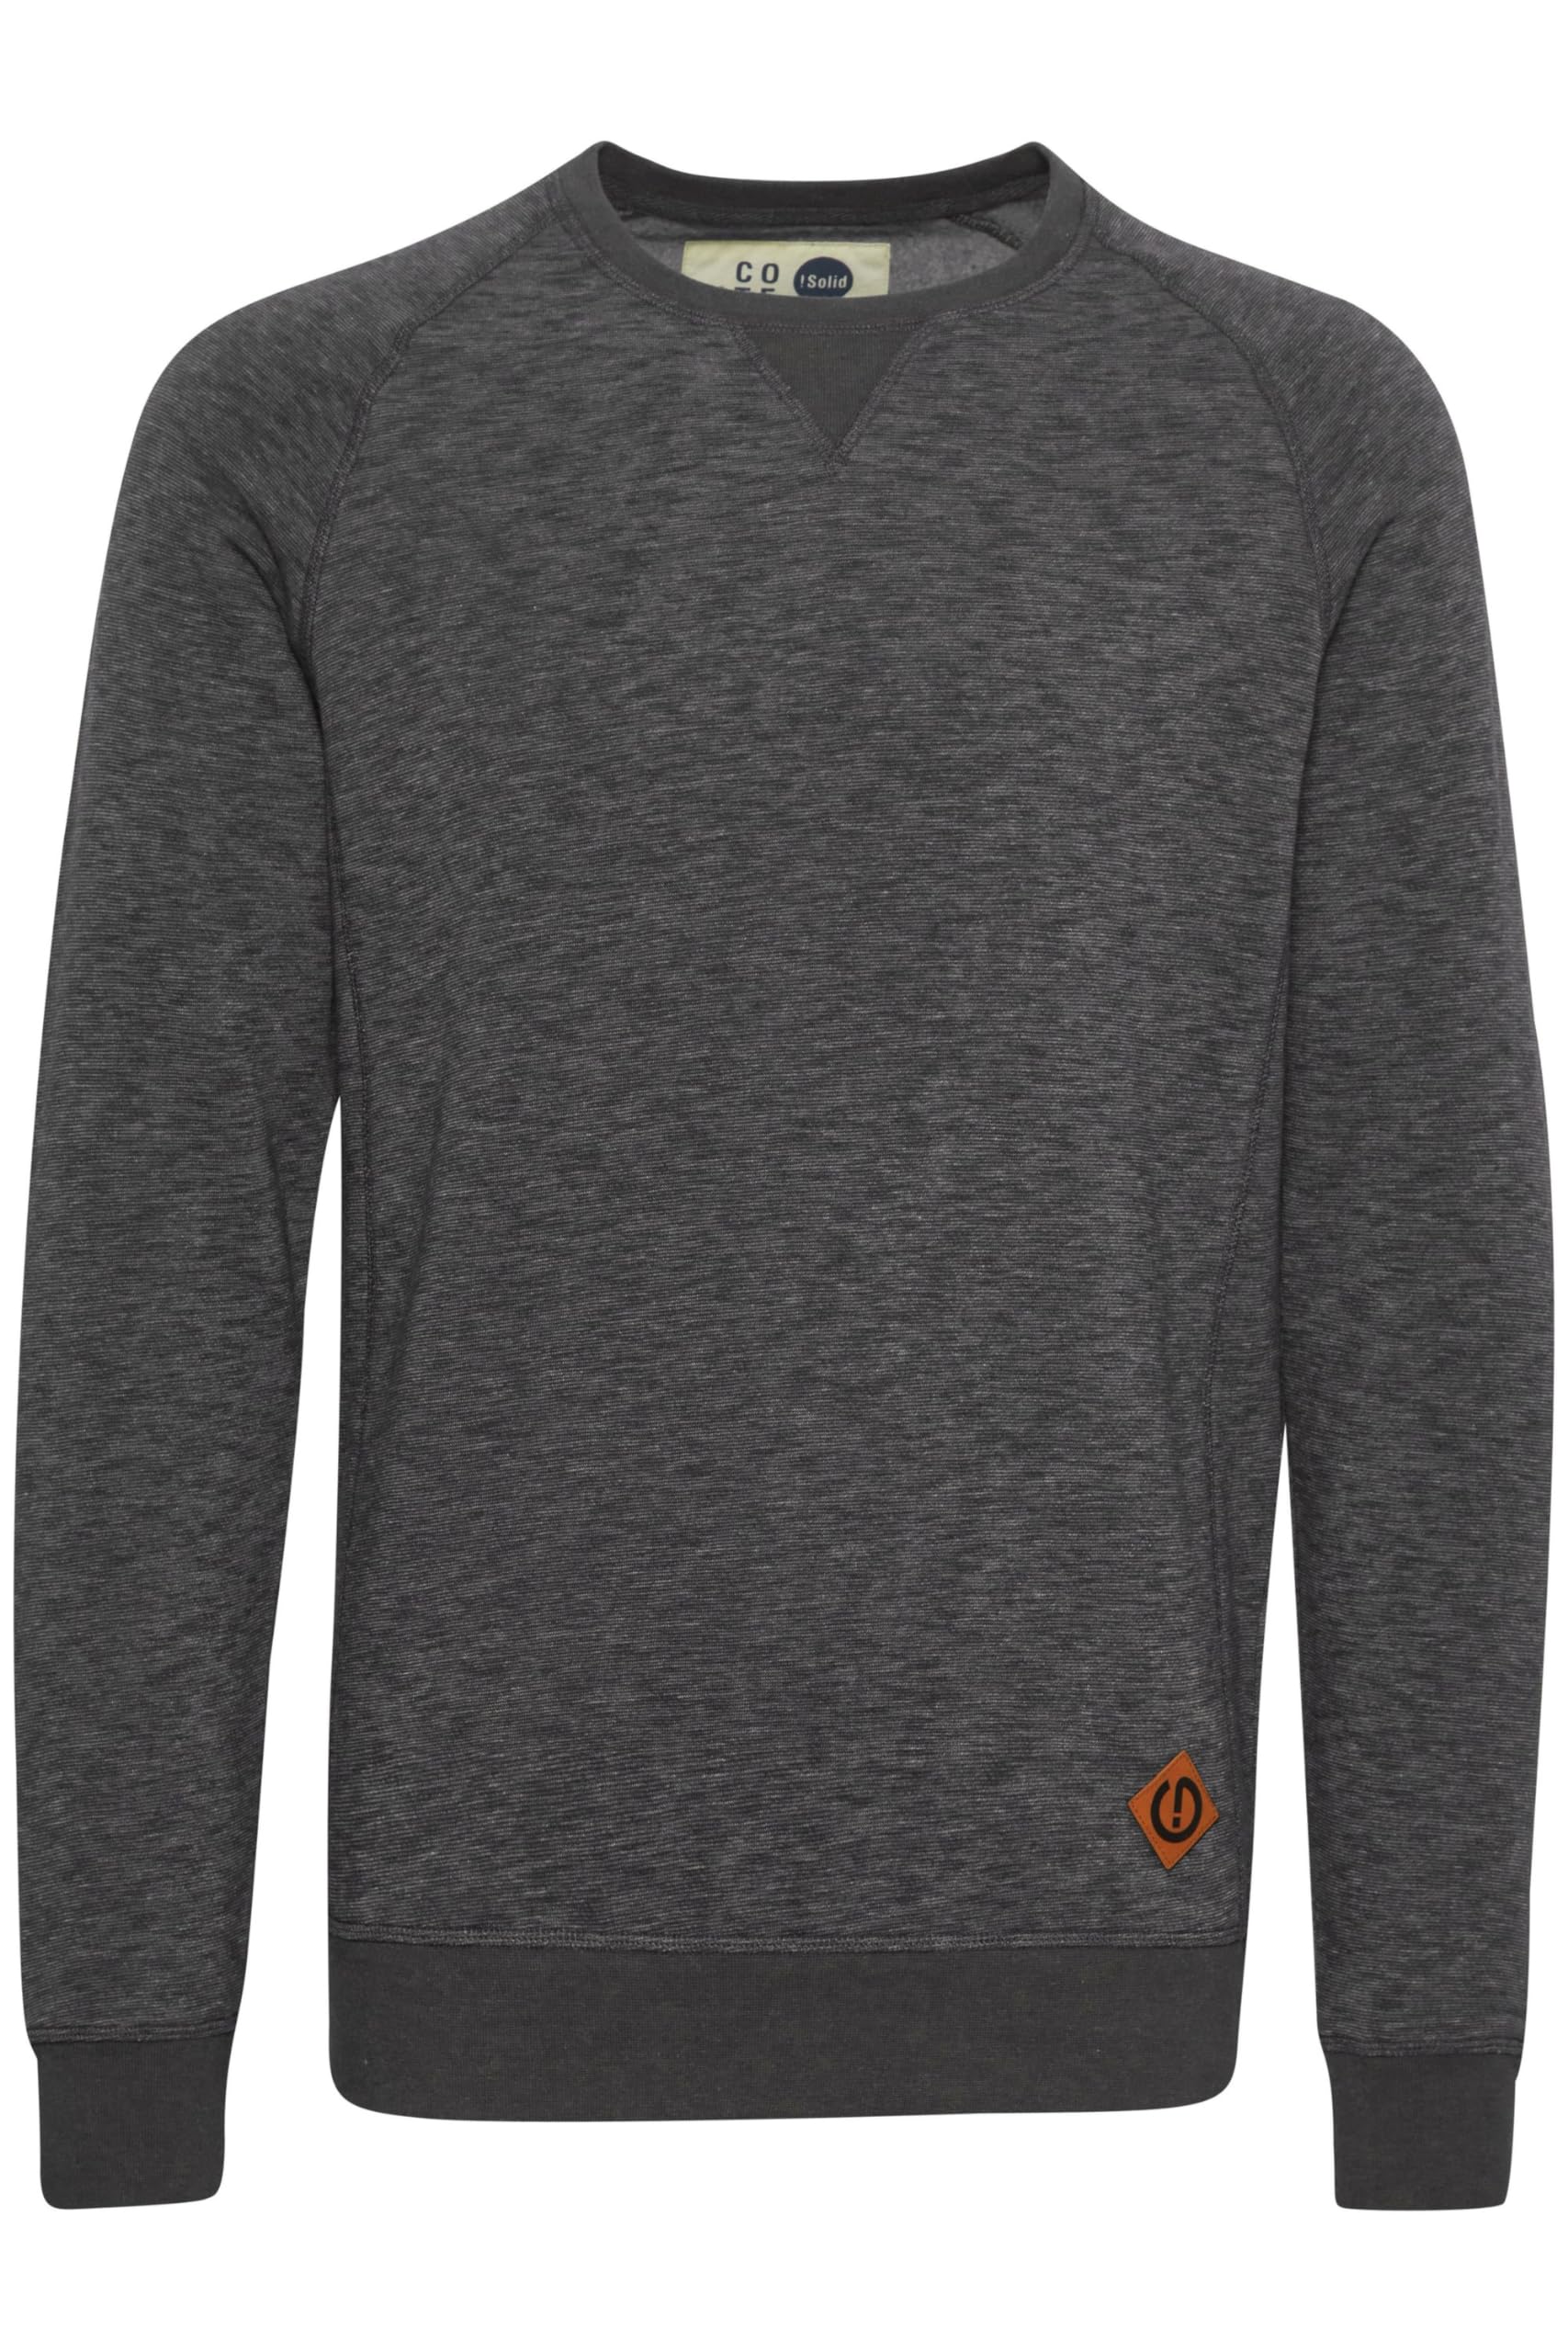 Solid VituNeck Herren Sweatshirt Pullover Pulli Mit Rundhalsausschnitt, Größe:S, Farbe:Grey Melange (8236)